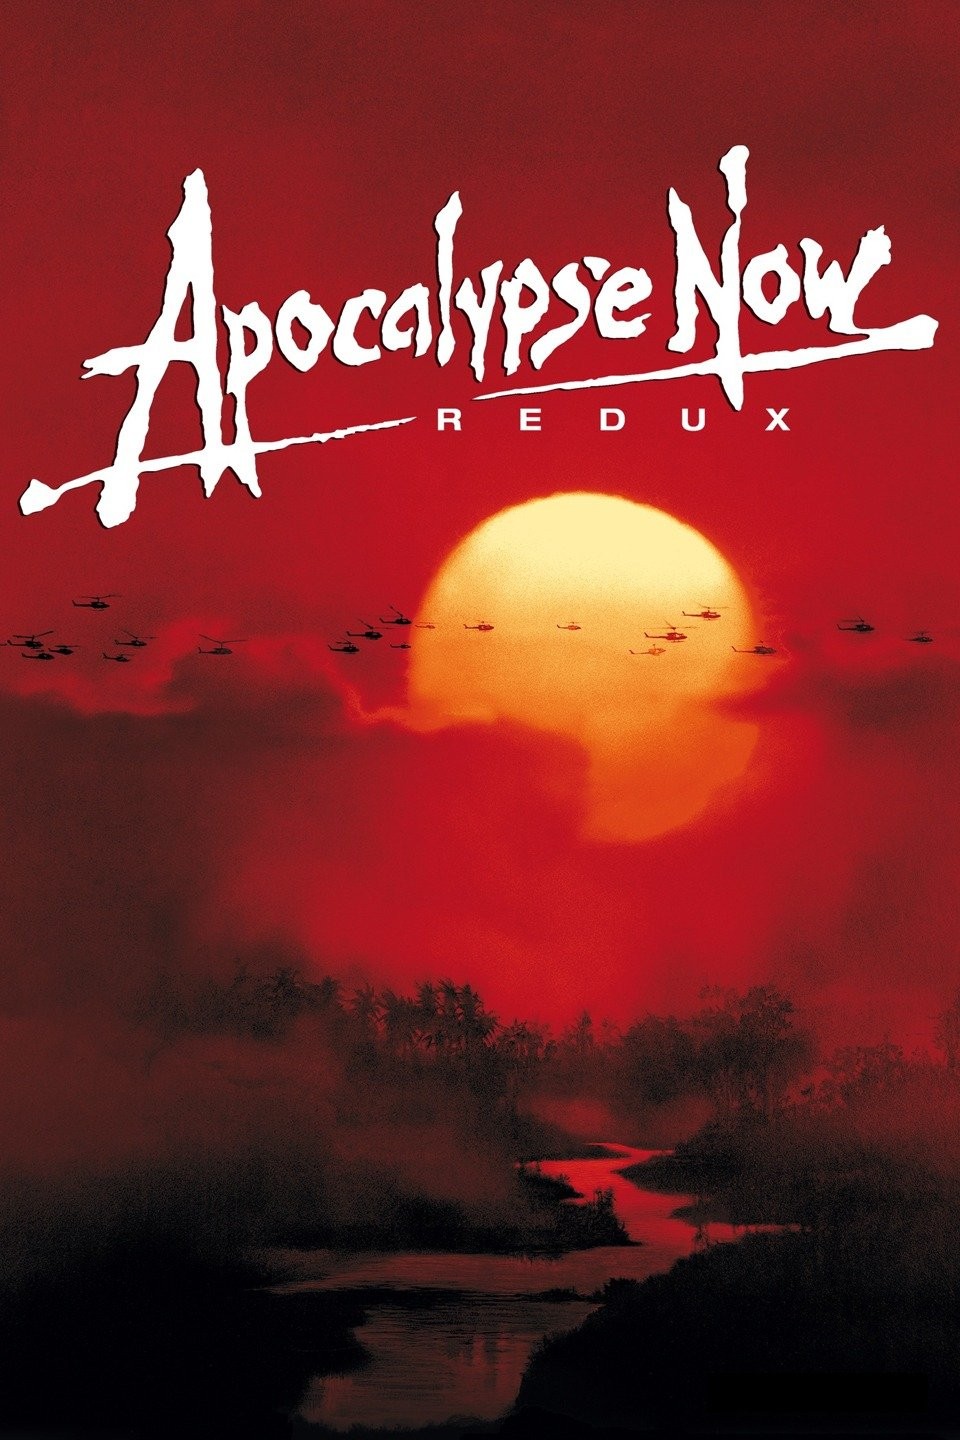 Photo: Apocalypse Now Redux Premiere in New York City - 